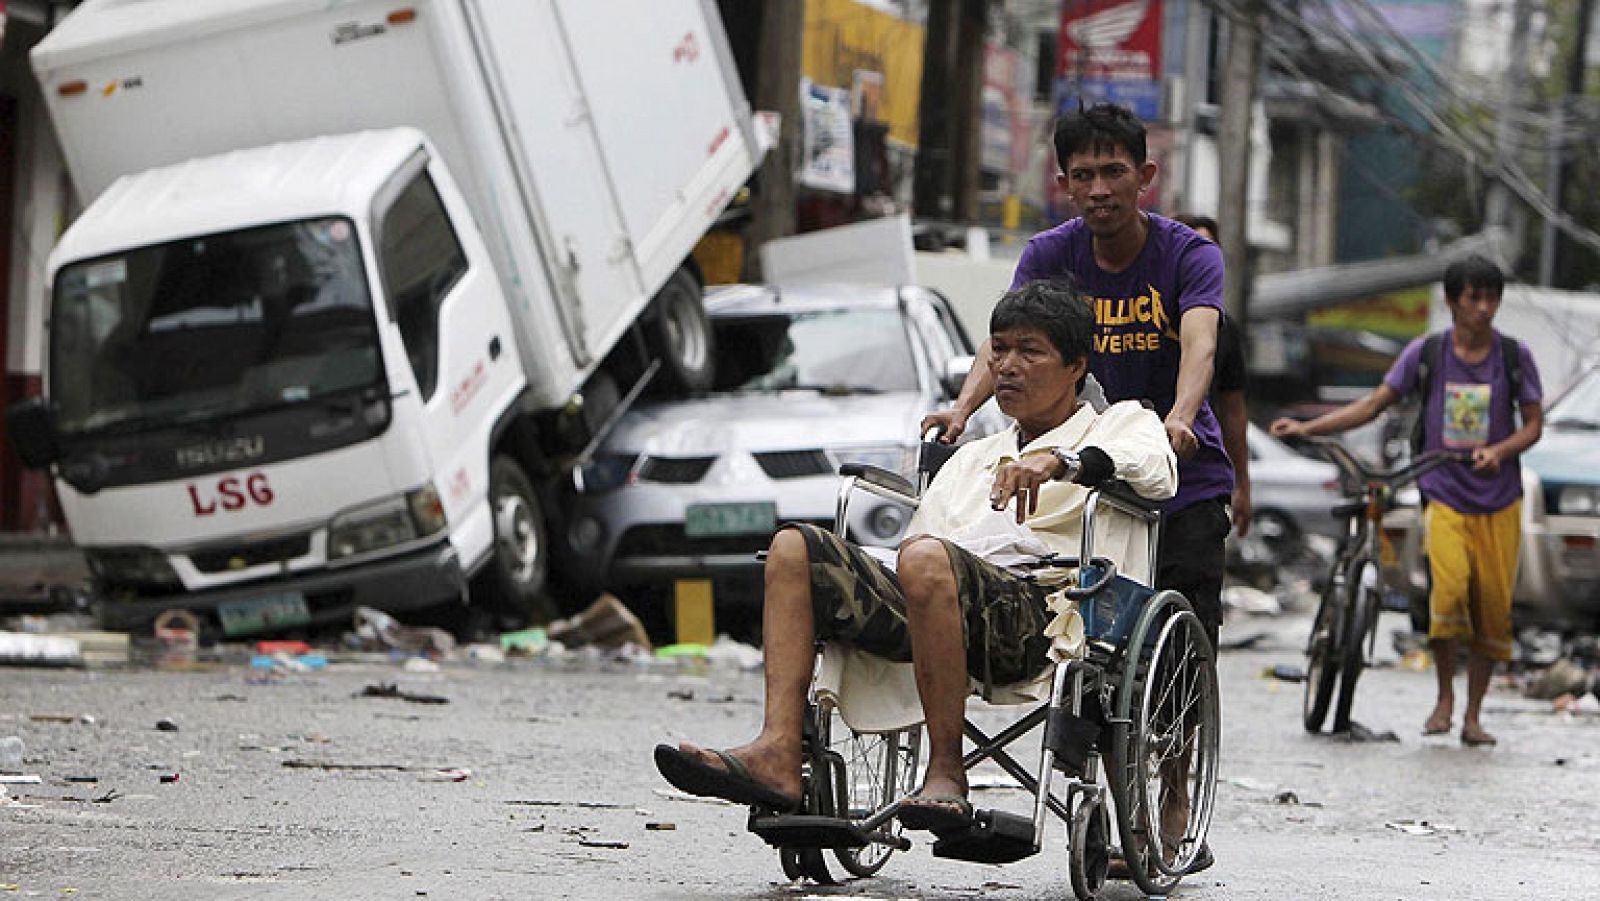  El hedor de descomposición de los cadáveres ahoga hoy la ciudad filipina de Tacloban, donde decenas de miles de supervivientes sufren la carencia de alimentos y agua tras el paso del tifón "Haiyan" el pasado viernes. La ayuda no termina de llegar debido a los graves problemas logísticos.